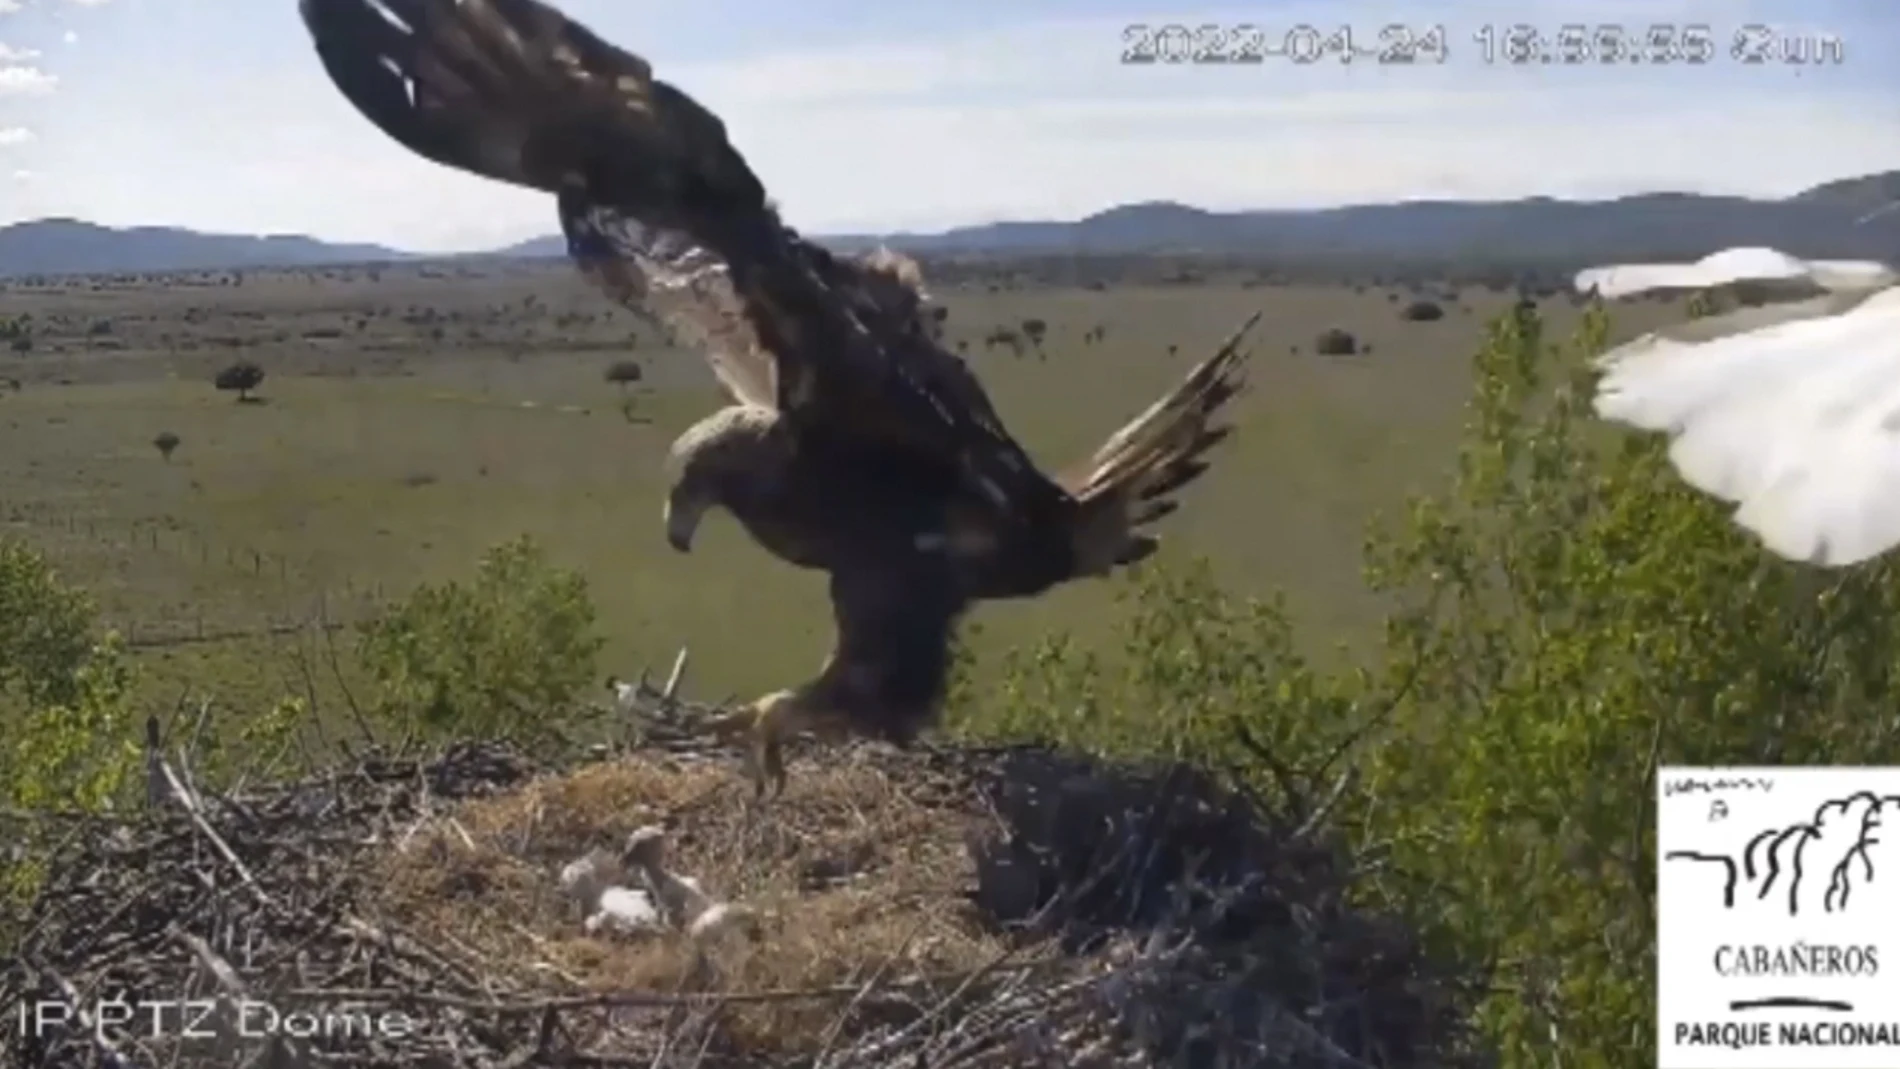 Las insólitas imágenes de un águila real atacando un nido de cigüeñas en el Parque Nacional de Cabañeros